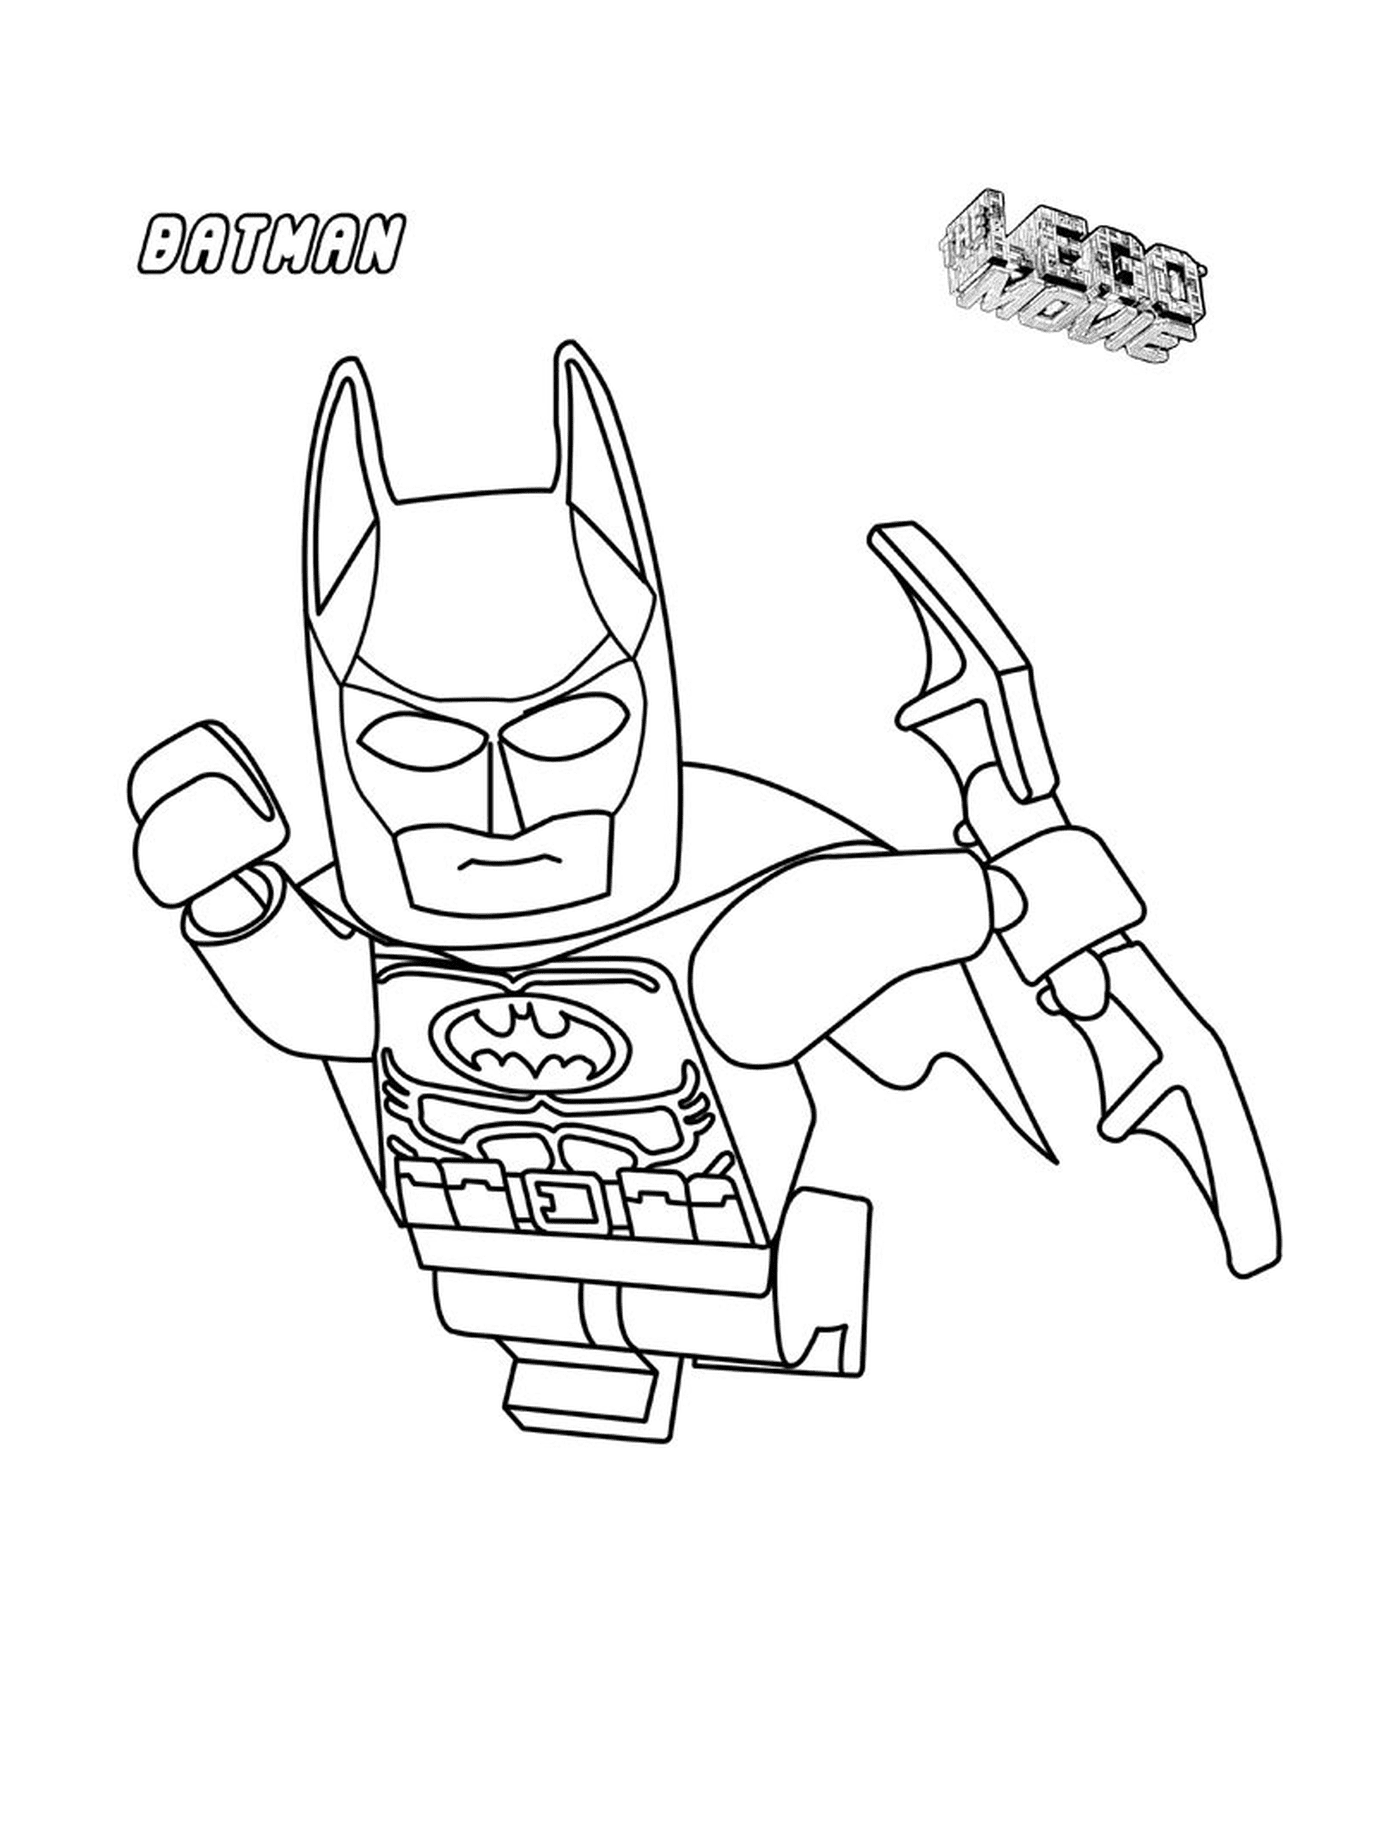  Batman Lego in aria 